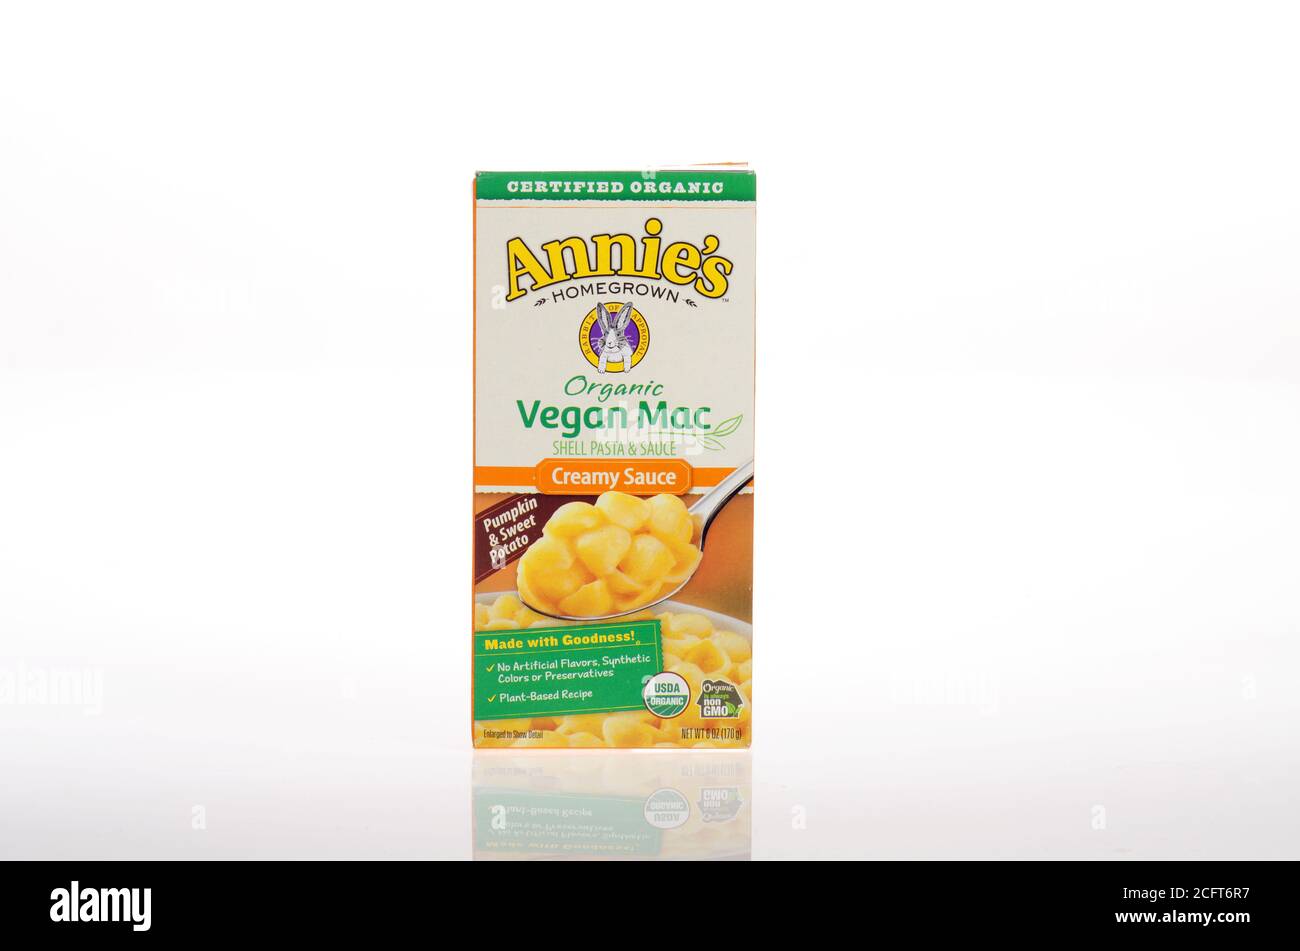 Annie’s Organic Vegan Mac & creamy cheese like sauce Stock Photo